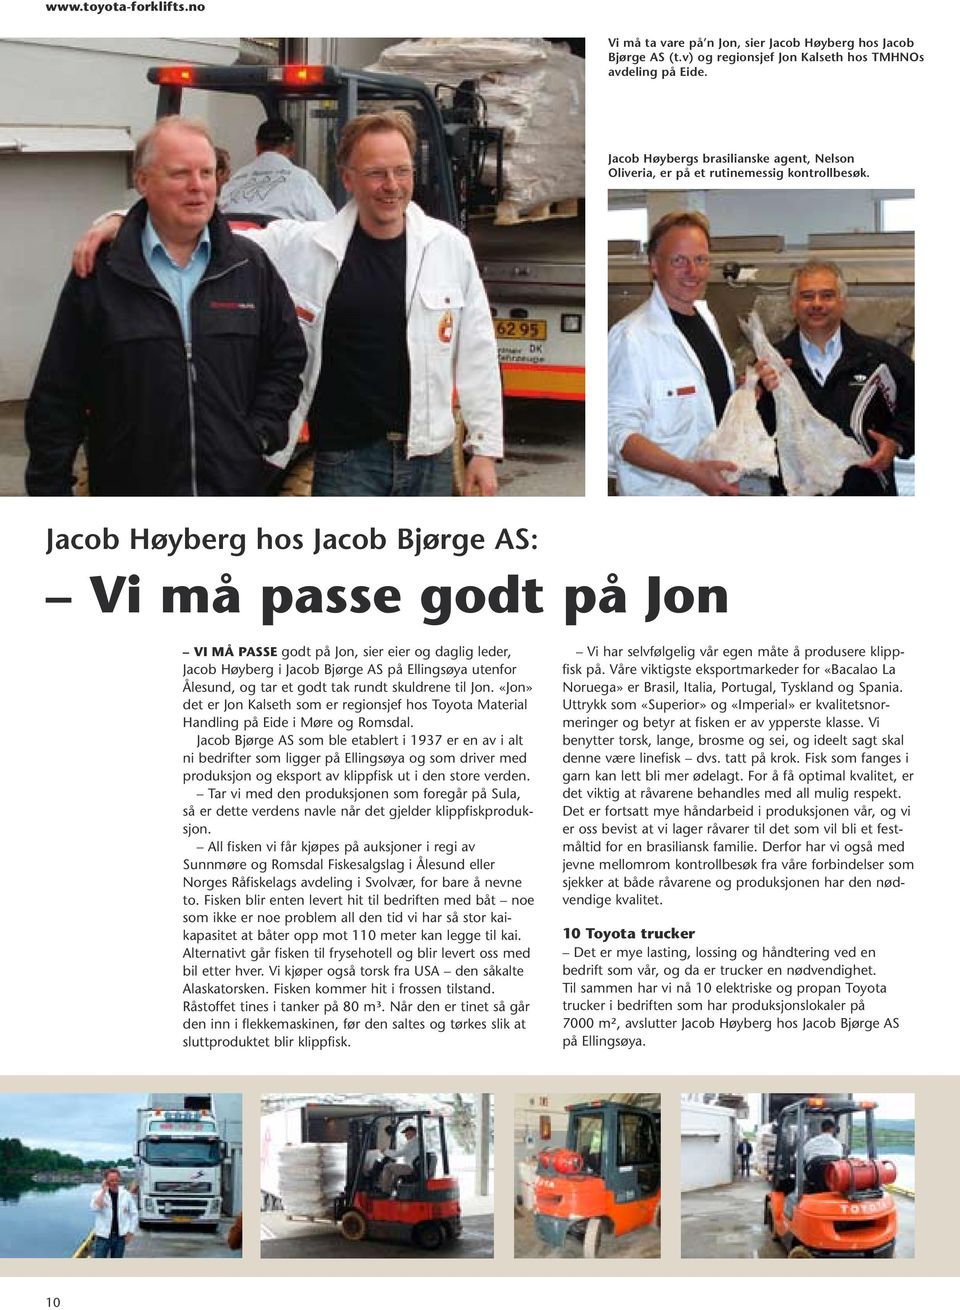 Jacob Høyberg hos Jacob Bjørge AS: Vi må passe godt på Jon Vi må passe godt på Jon, sier eier og daglig leder, Jacob Høyberg i Jacob Bjørge AS på Ellingsøya utenfor Ålesund, og tar et godt tak rundt